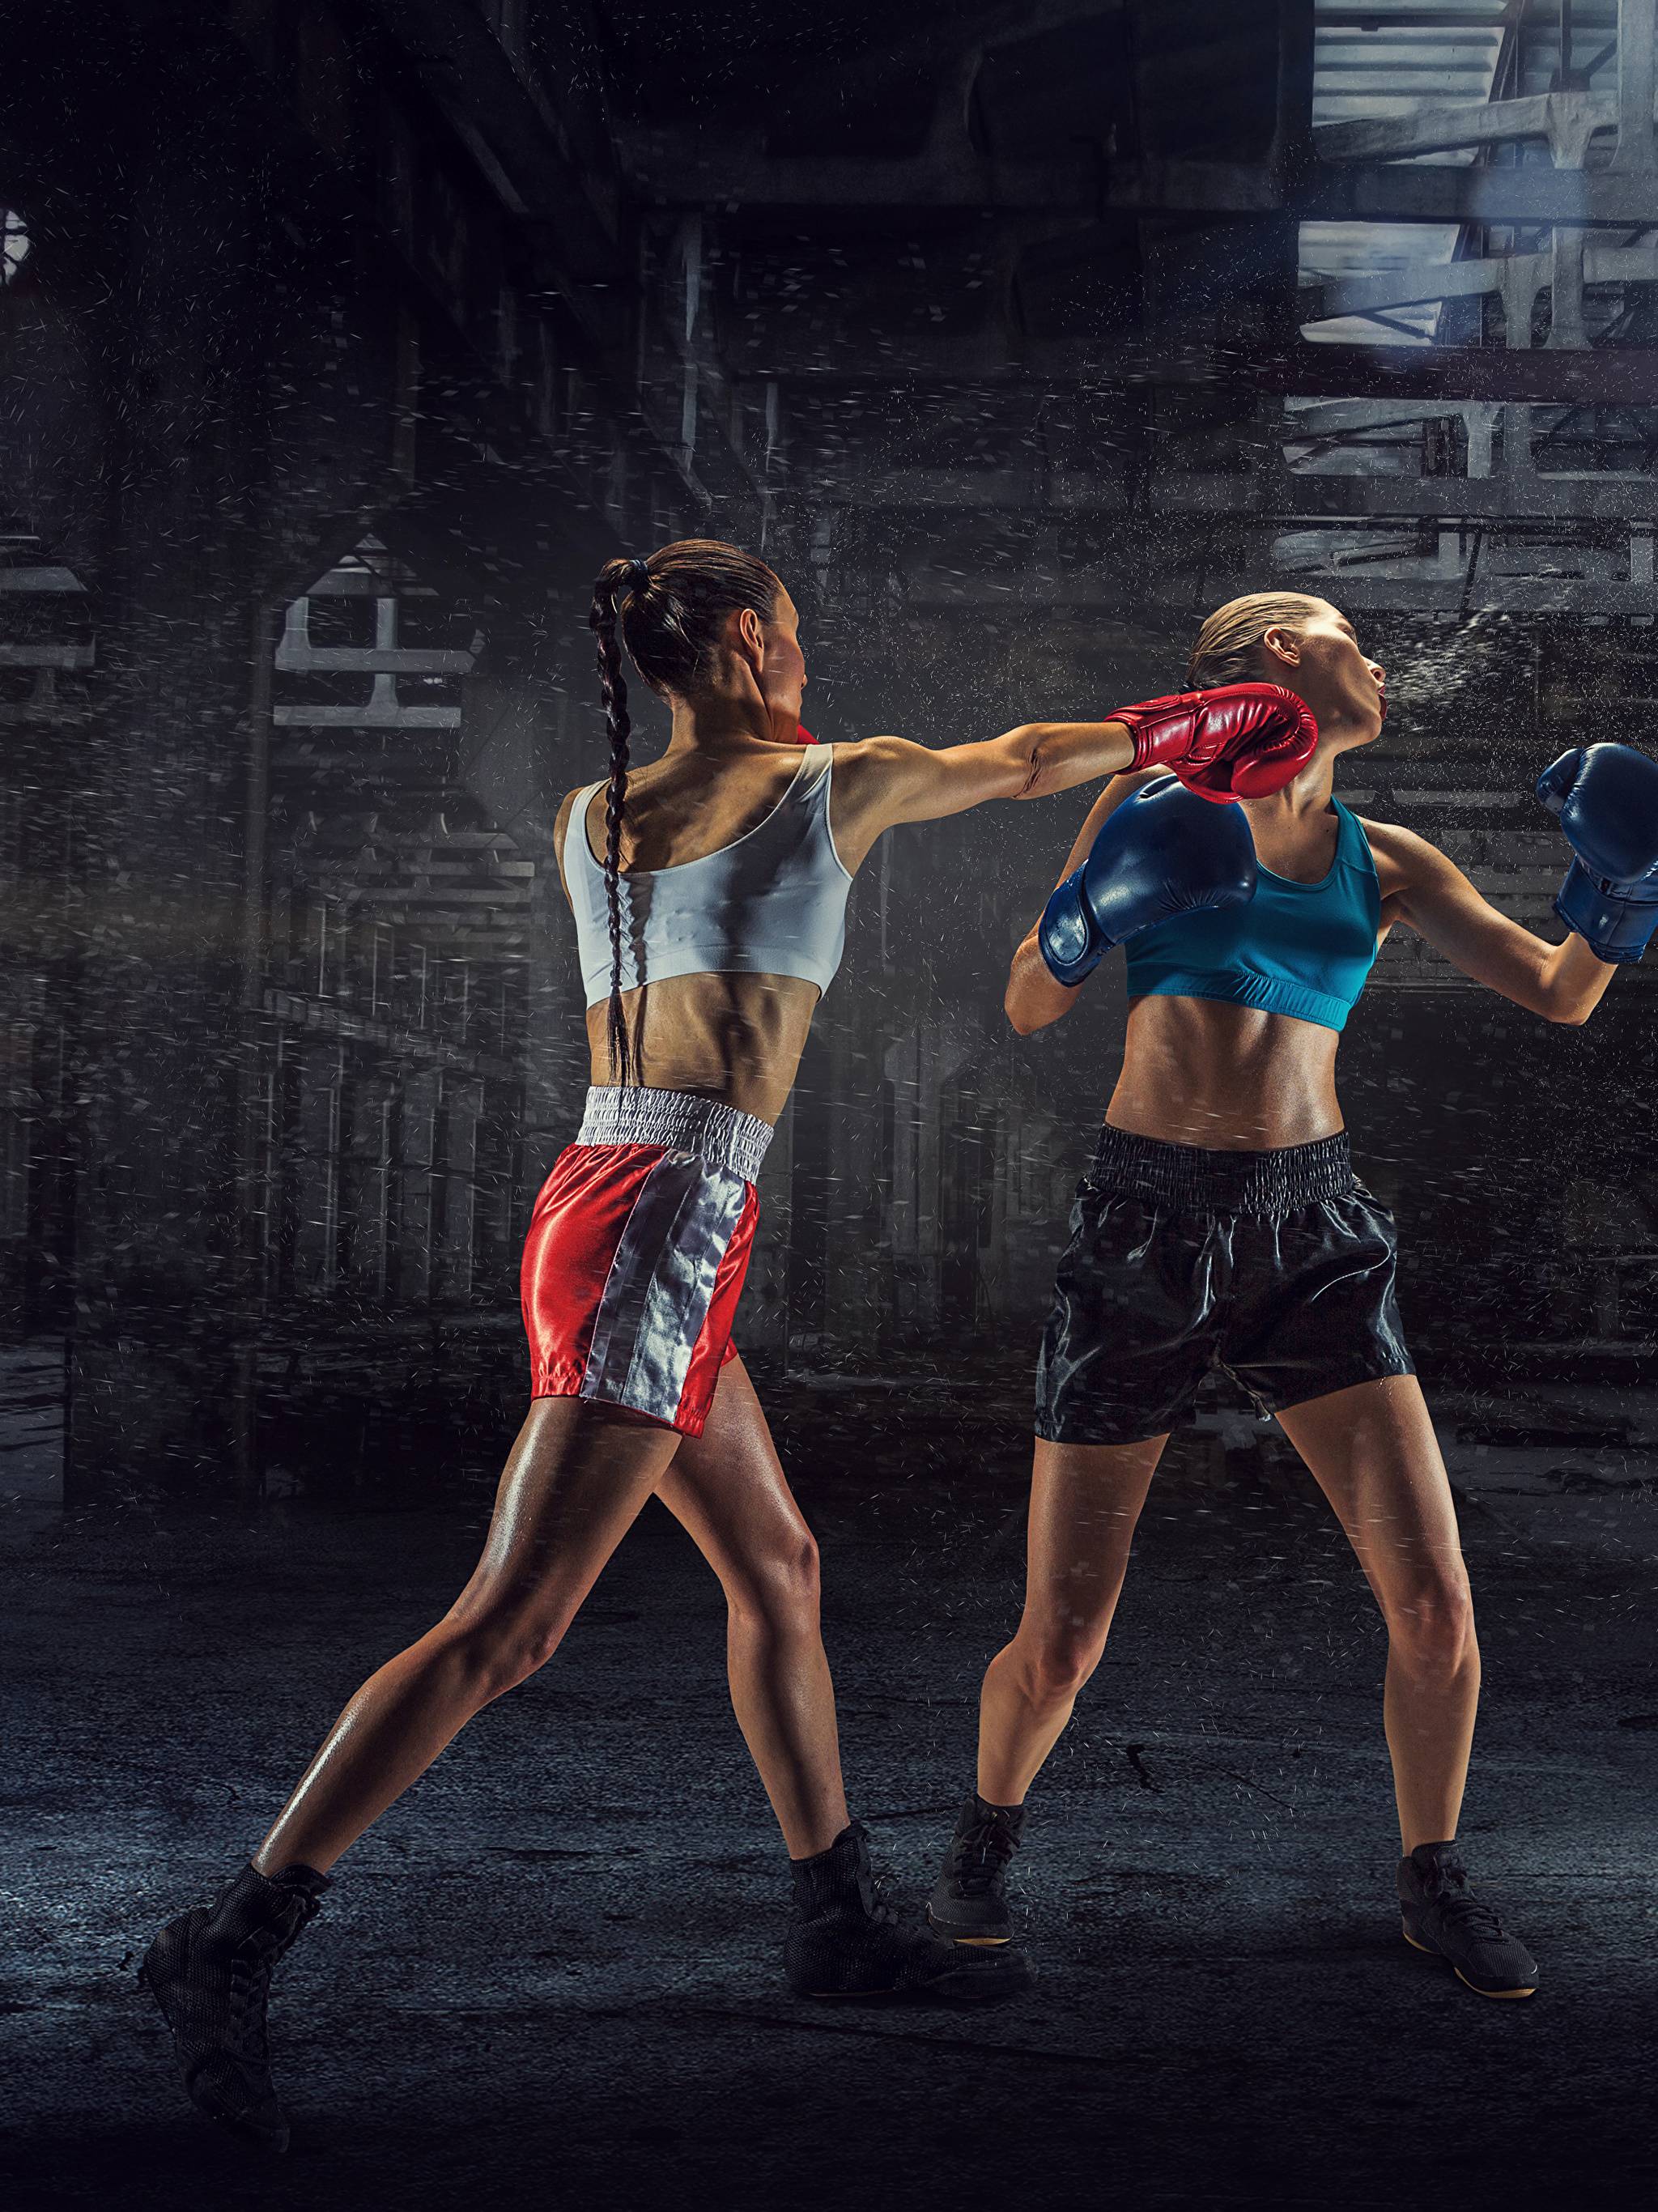 Бокс или тайский бокс - разница и общие черты, кто кого победит